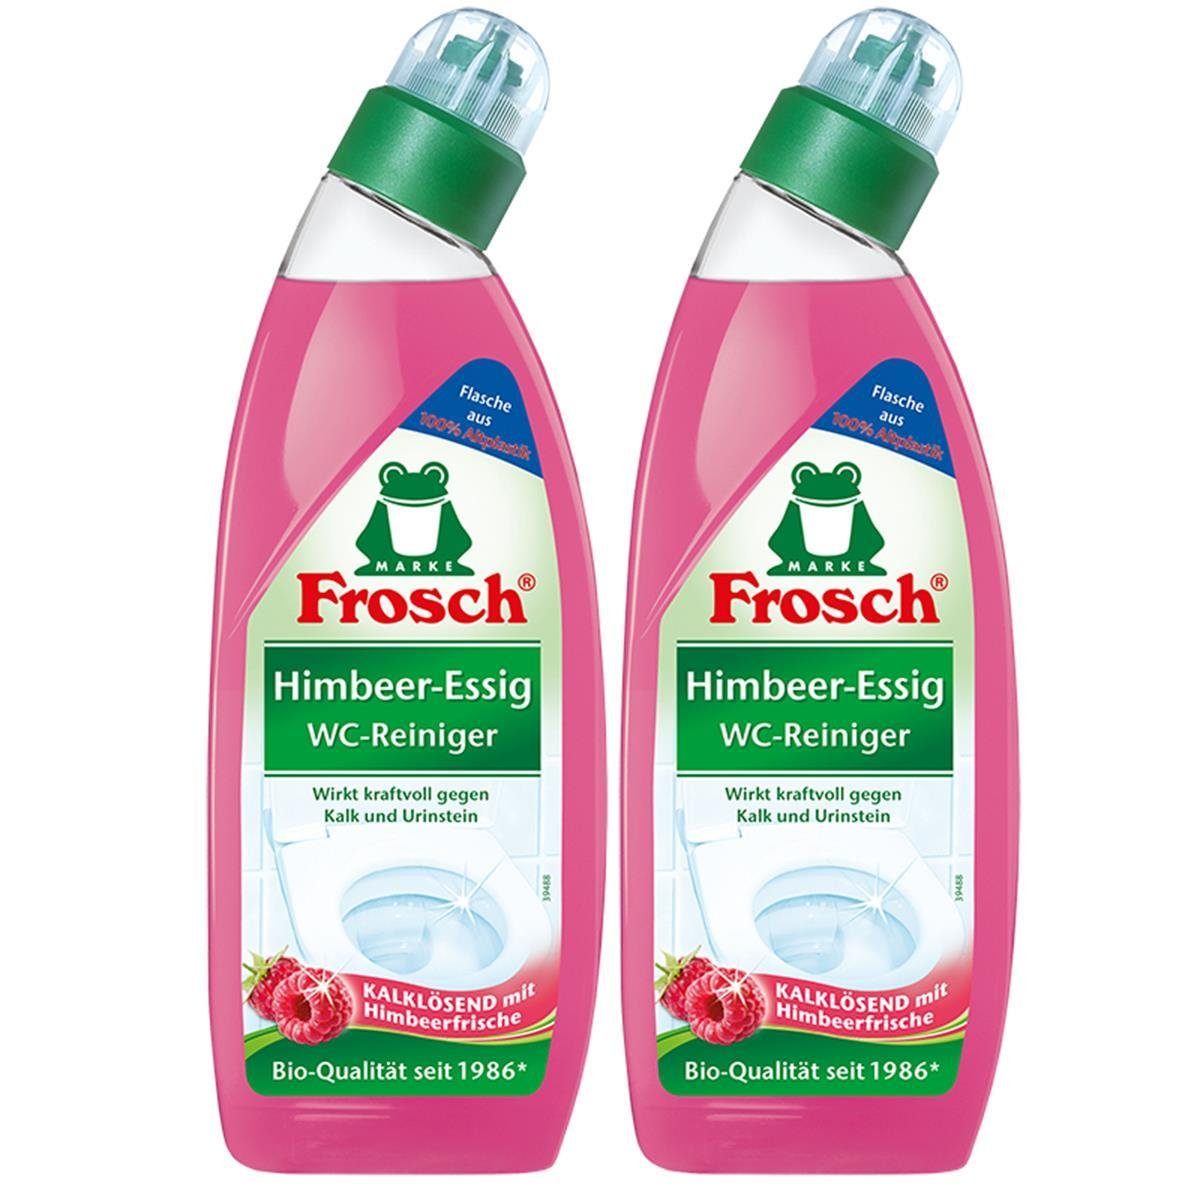 FROSCH ml Urinstein Kalk Frosch - Himbeer-Essig WC-Reiniger und 750 WC-Reiniger (2e Gegen